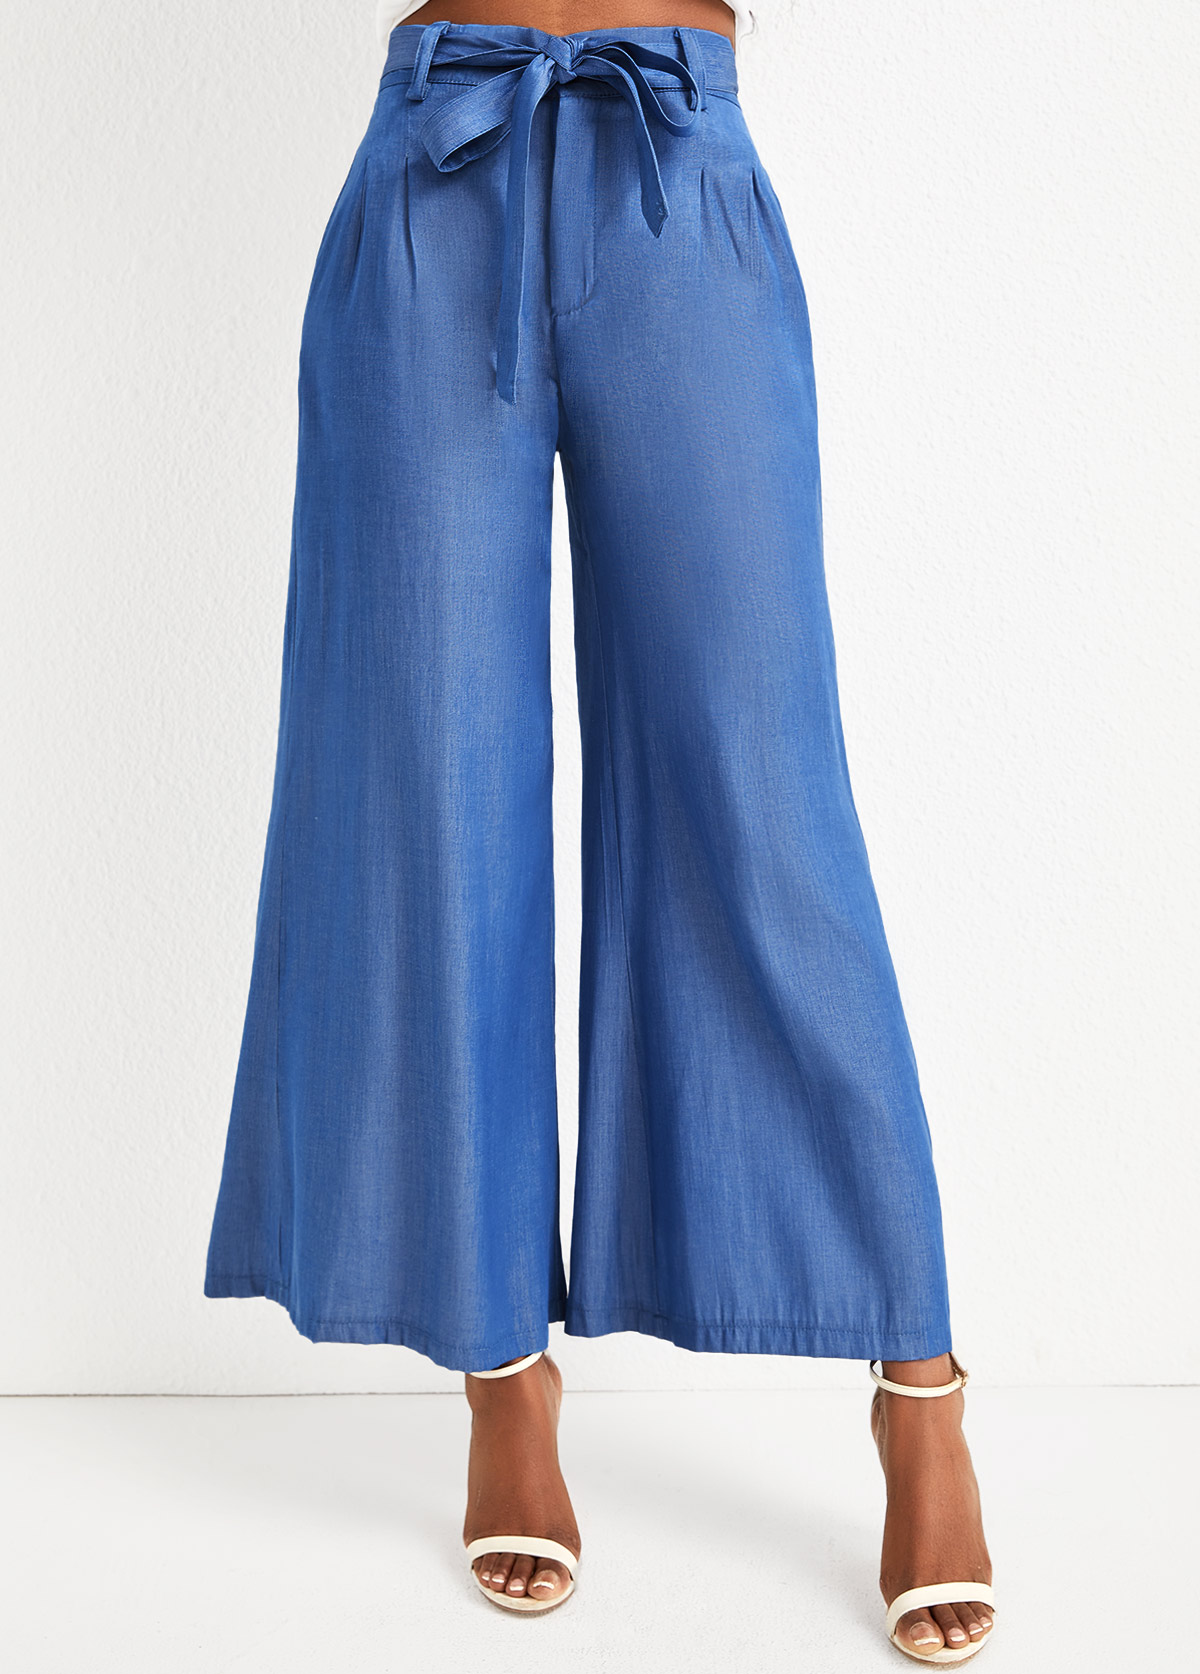 Denimblaue Jeans mit hoher Taille und Reißverschluss im Hosenschlitz